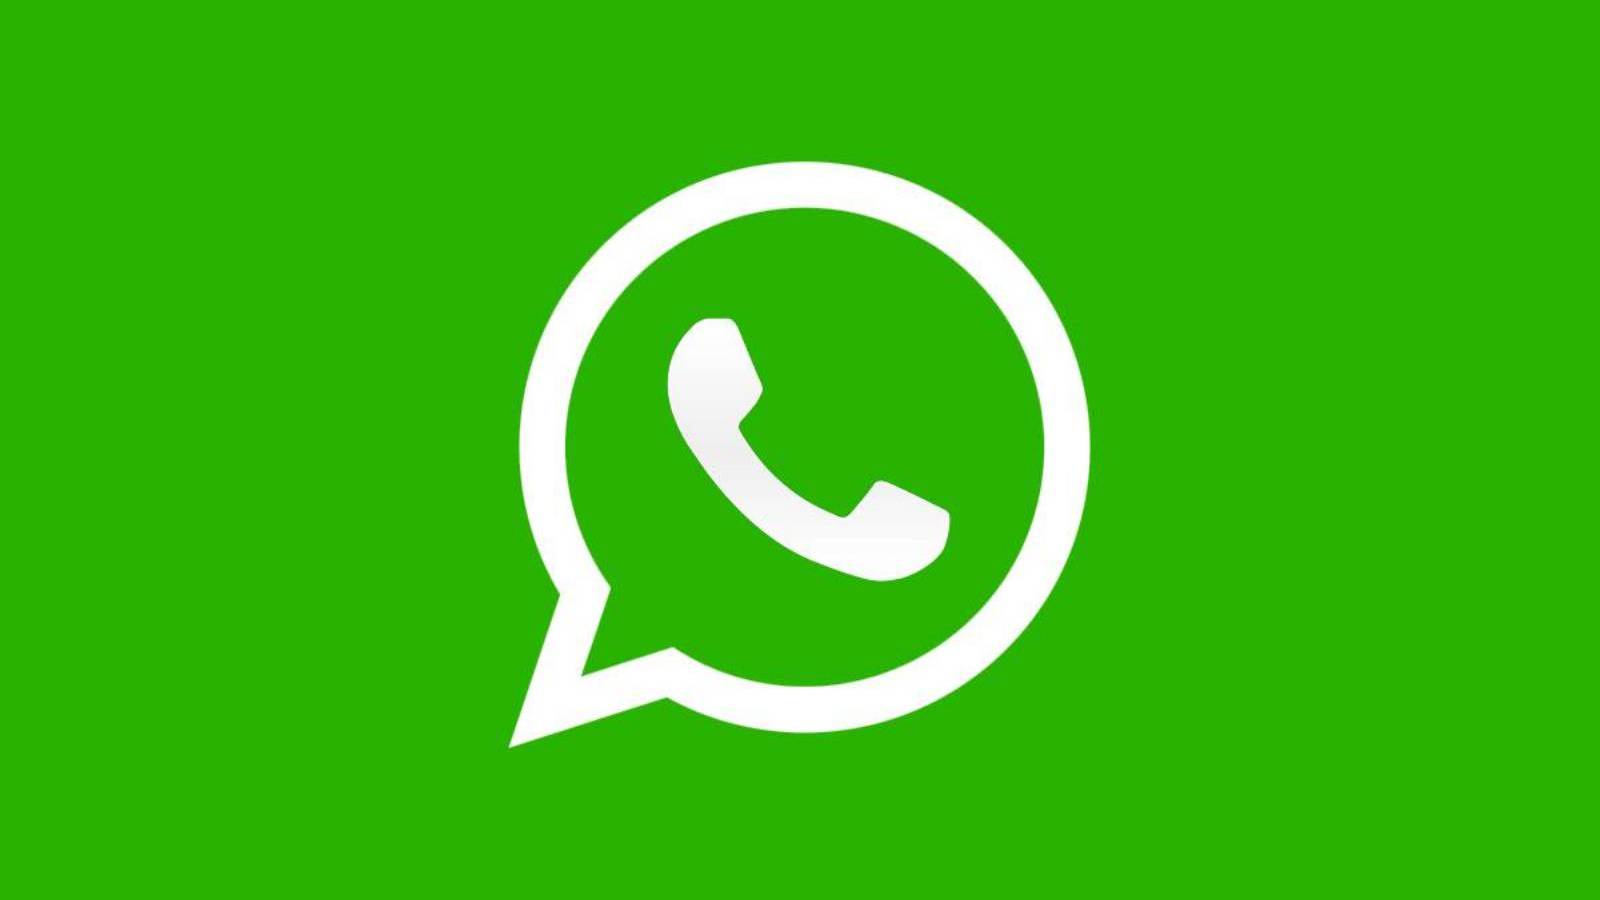 WhatsApp Nya ändringar HEMLIGA gruppsamtal